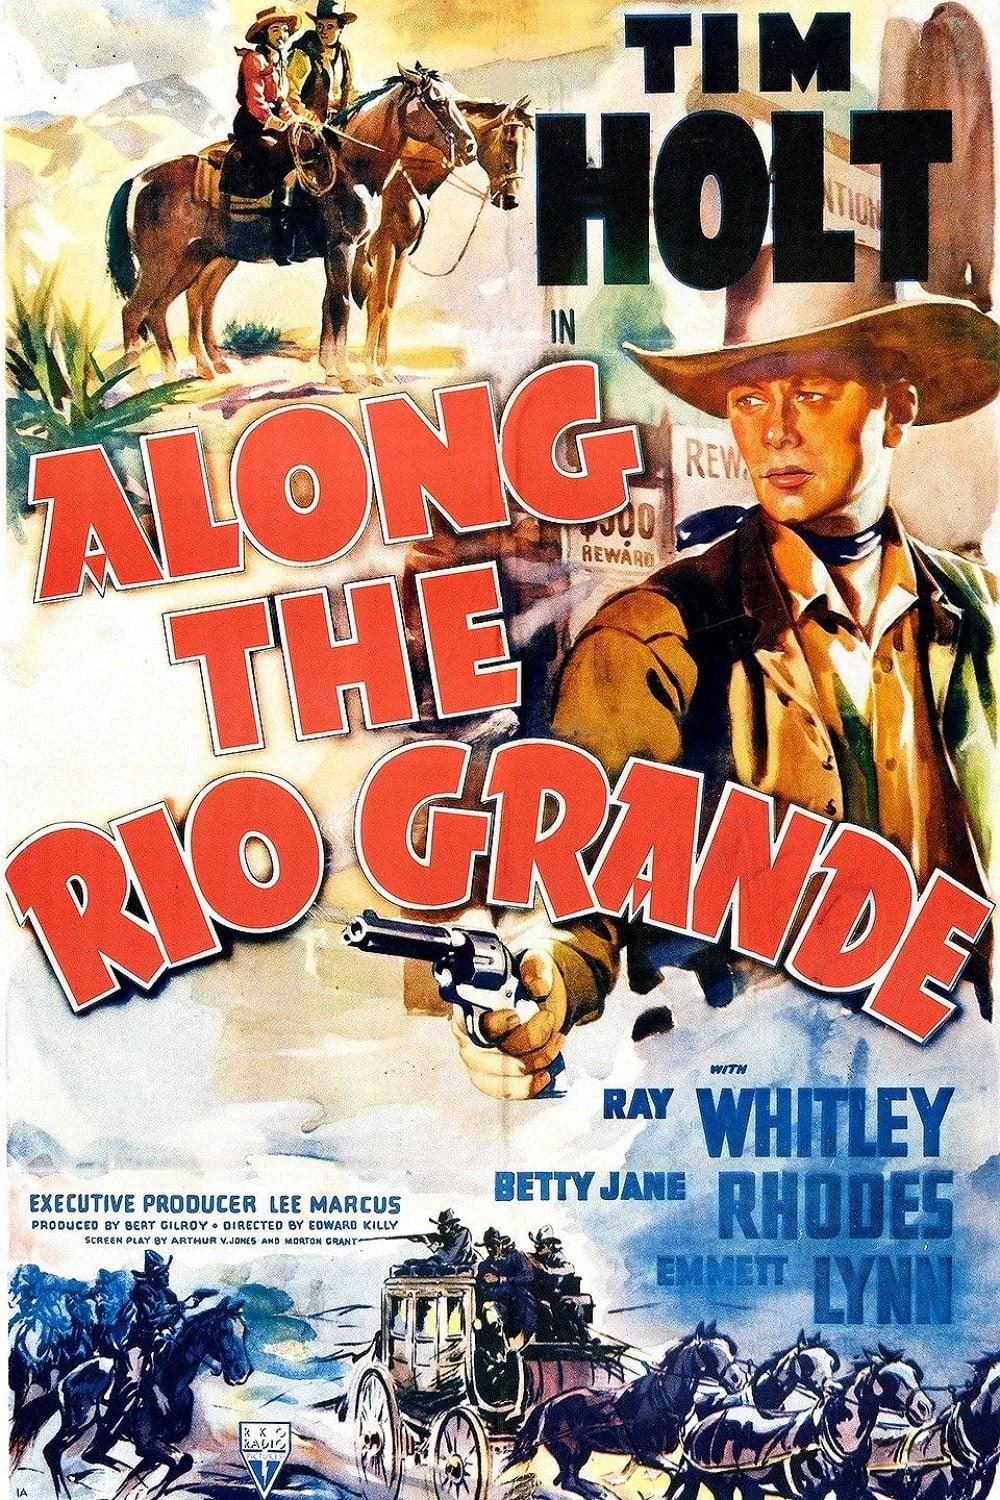 Along the Rio Grande poster